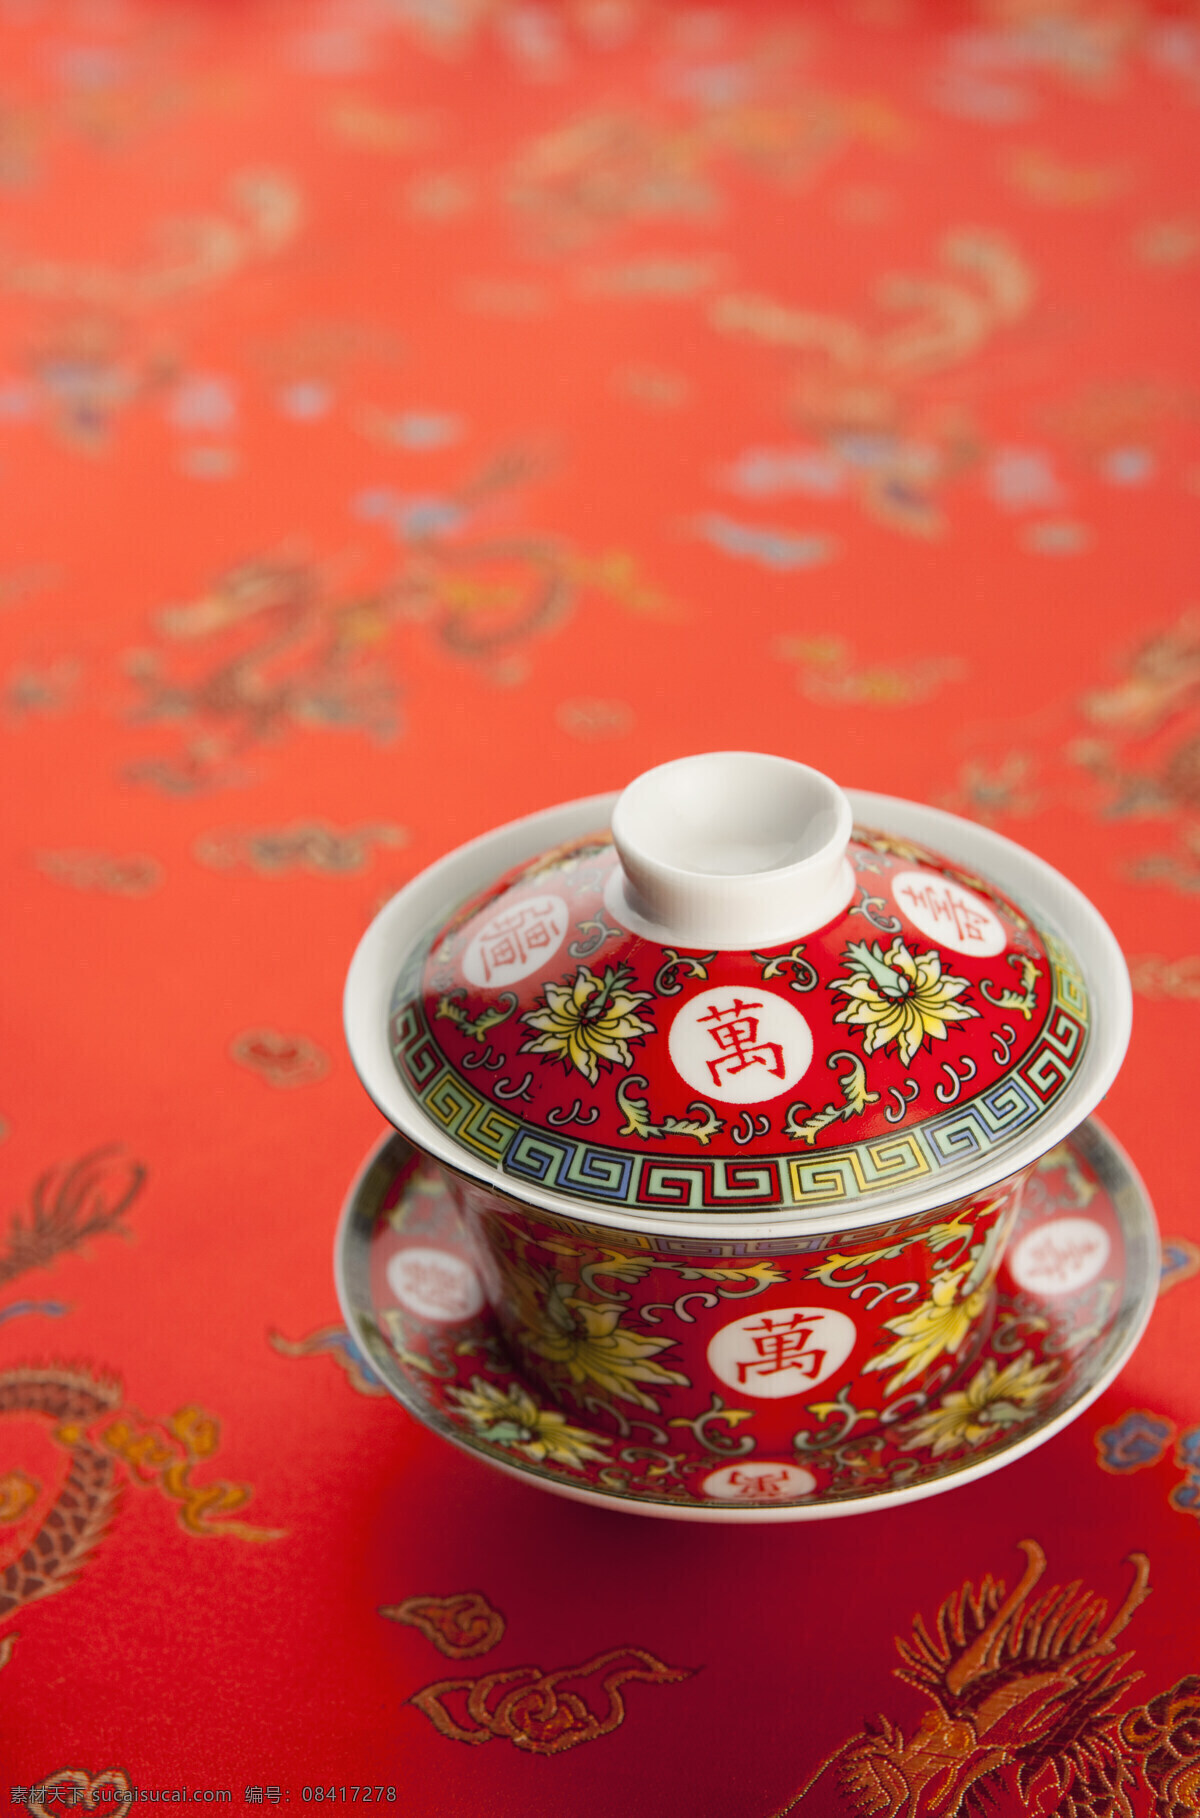 古典 布料 陶瓷 茶具 中国传统 花纹布料 红色花布 龙腾图 古典布料图案 印染素材 品茶 陶瓷杯 家居用品 布料高清图 传统文化 高清图片 局部对焦 茶道图片 餐饮美食